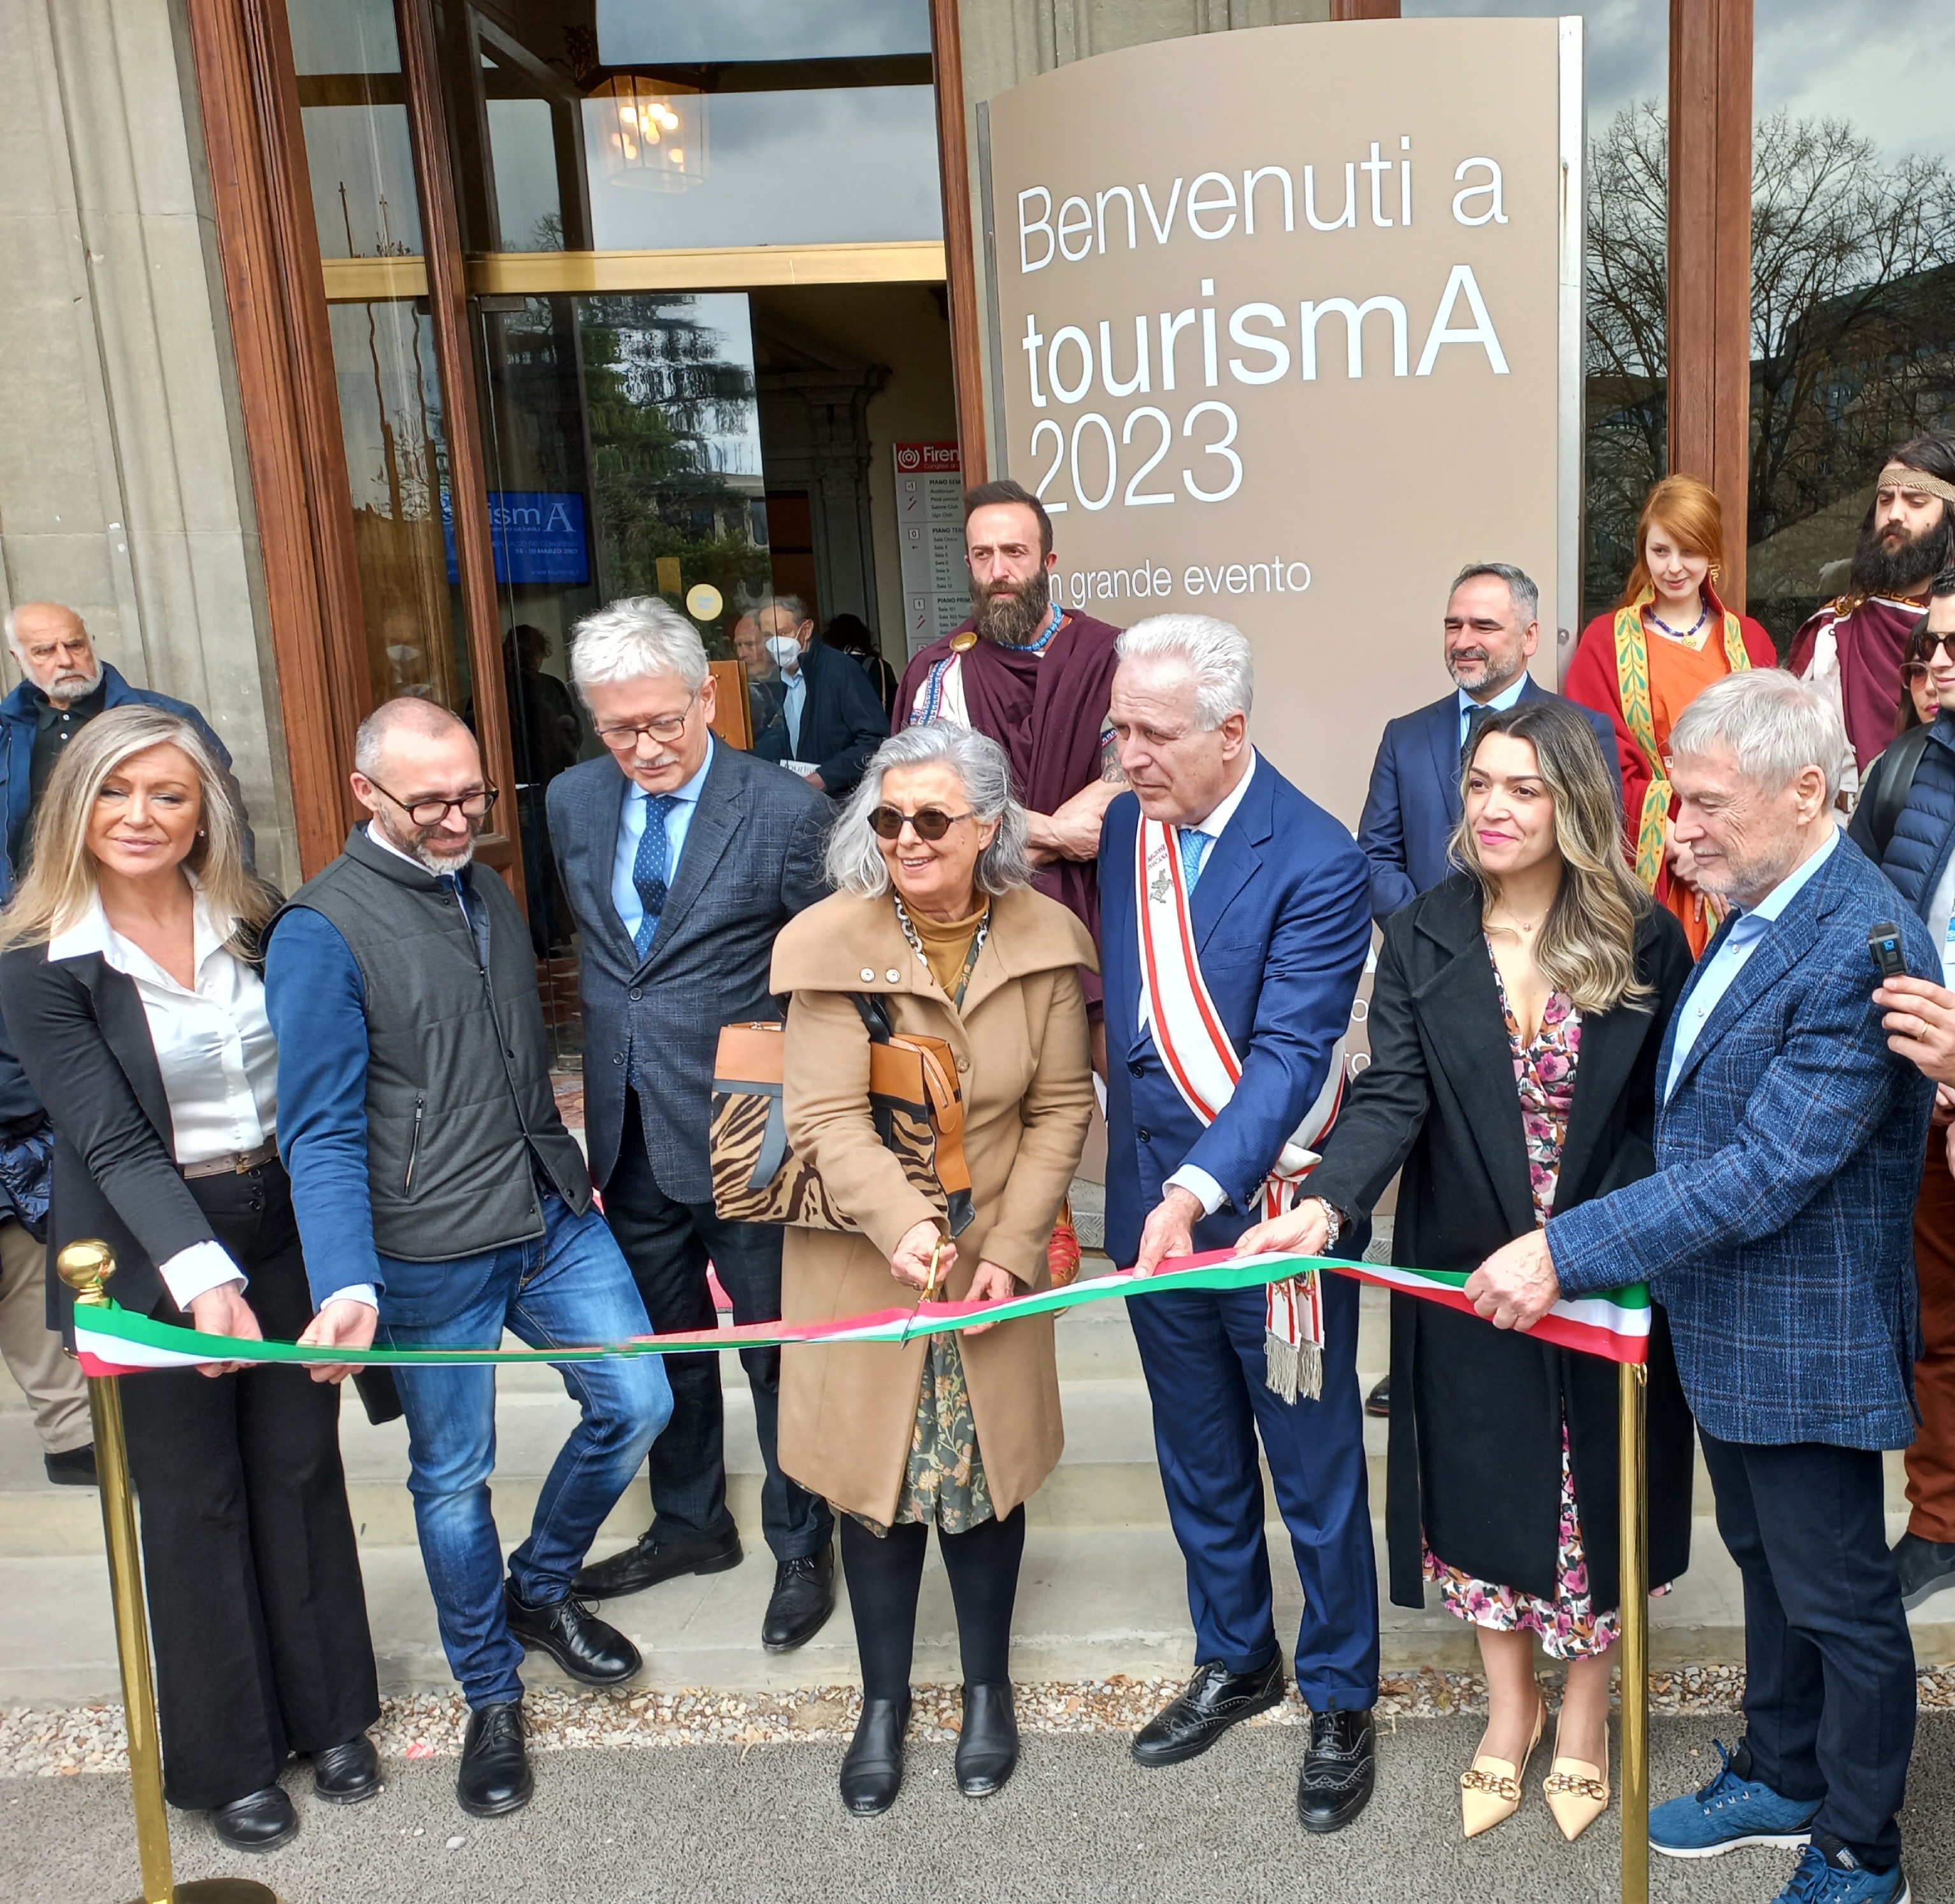 tourismA 2023, è soprattutto la ‘Toscana diffusa’ a trainare la ripresa del turismo